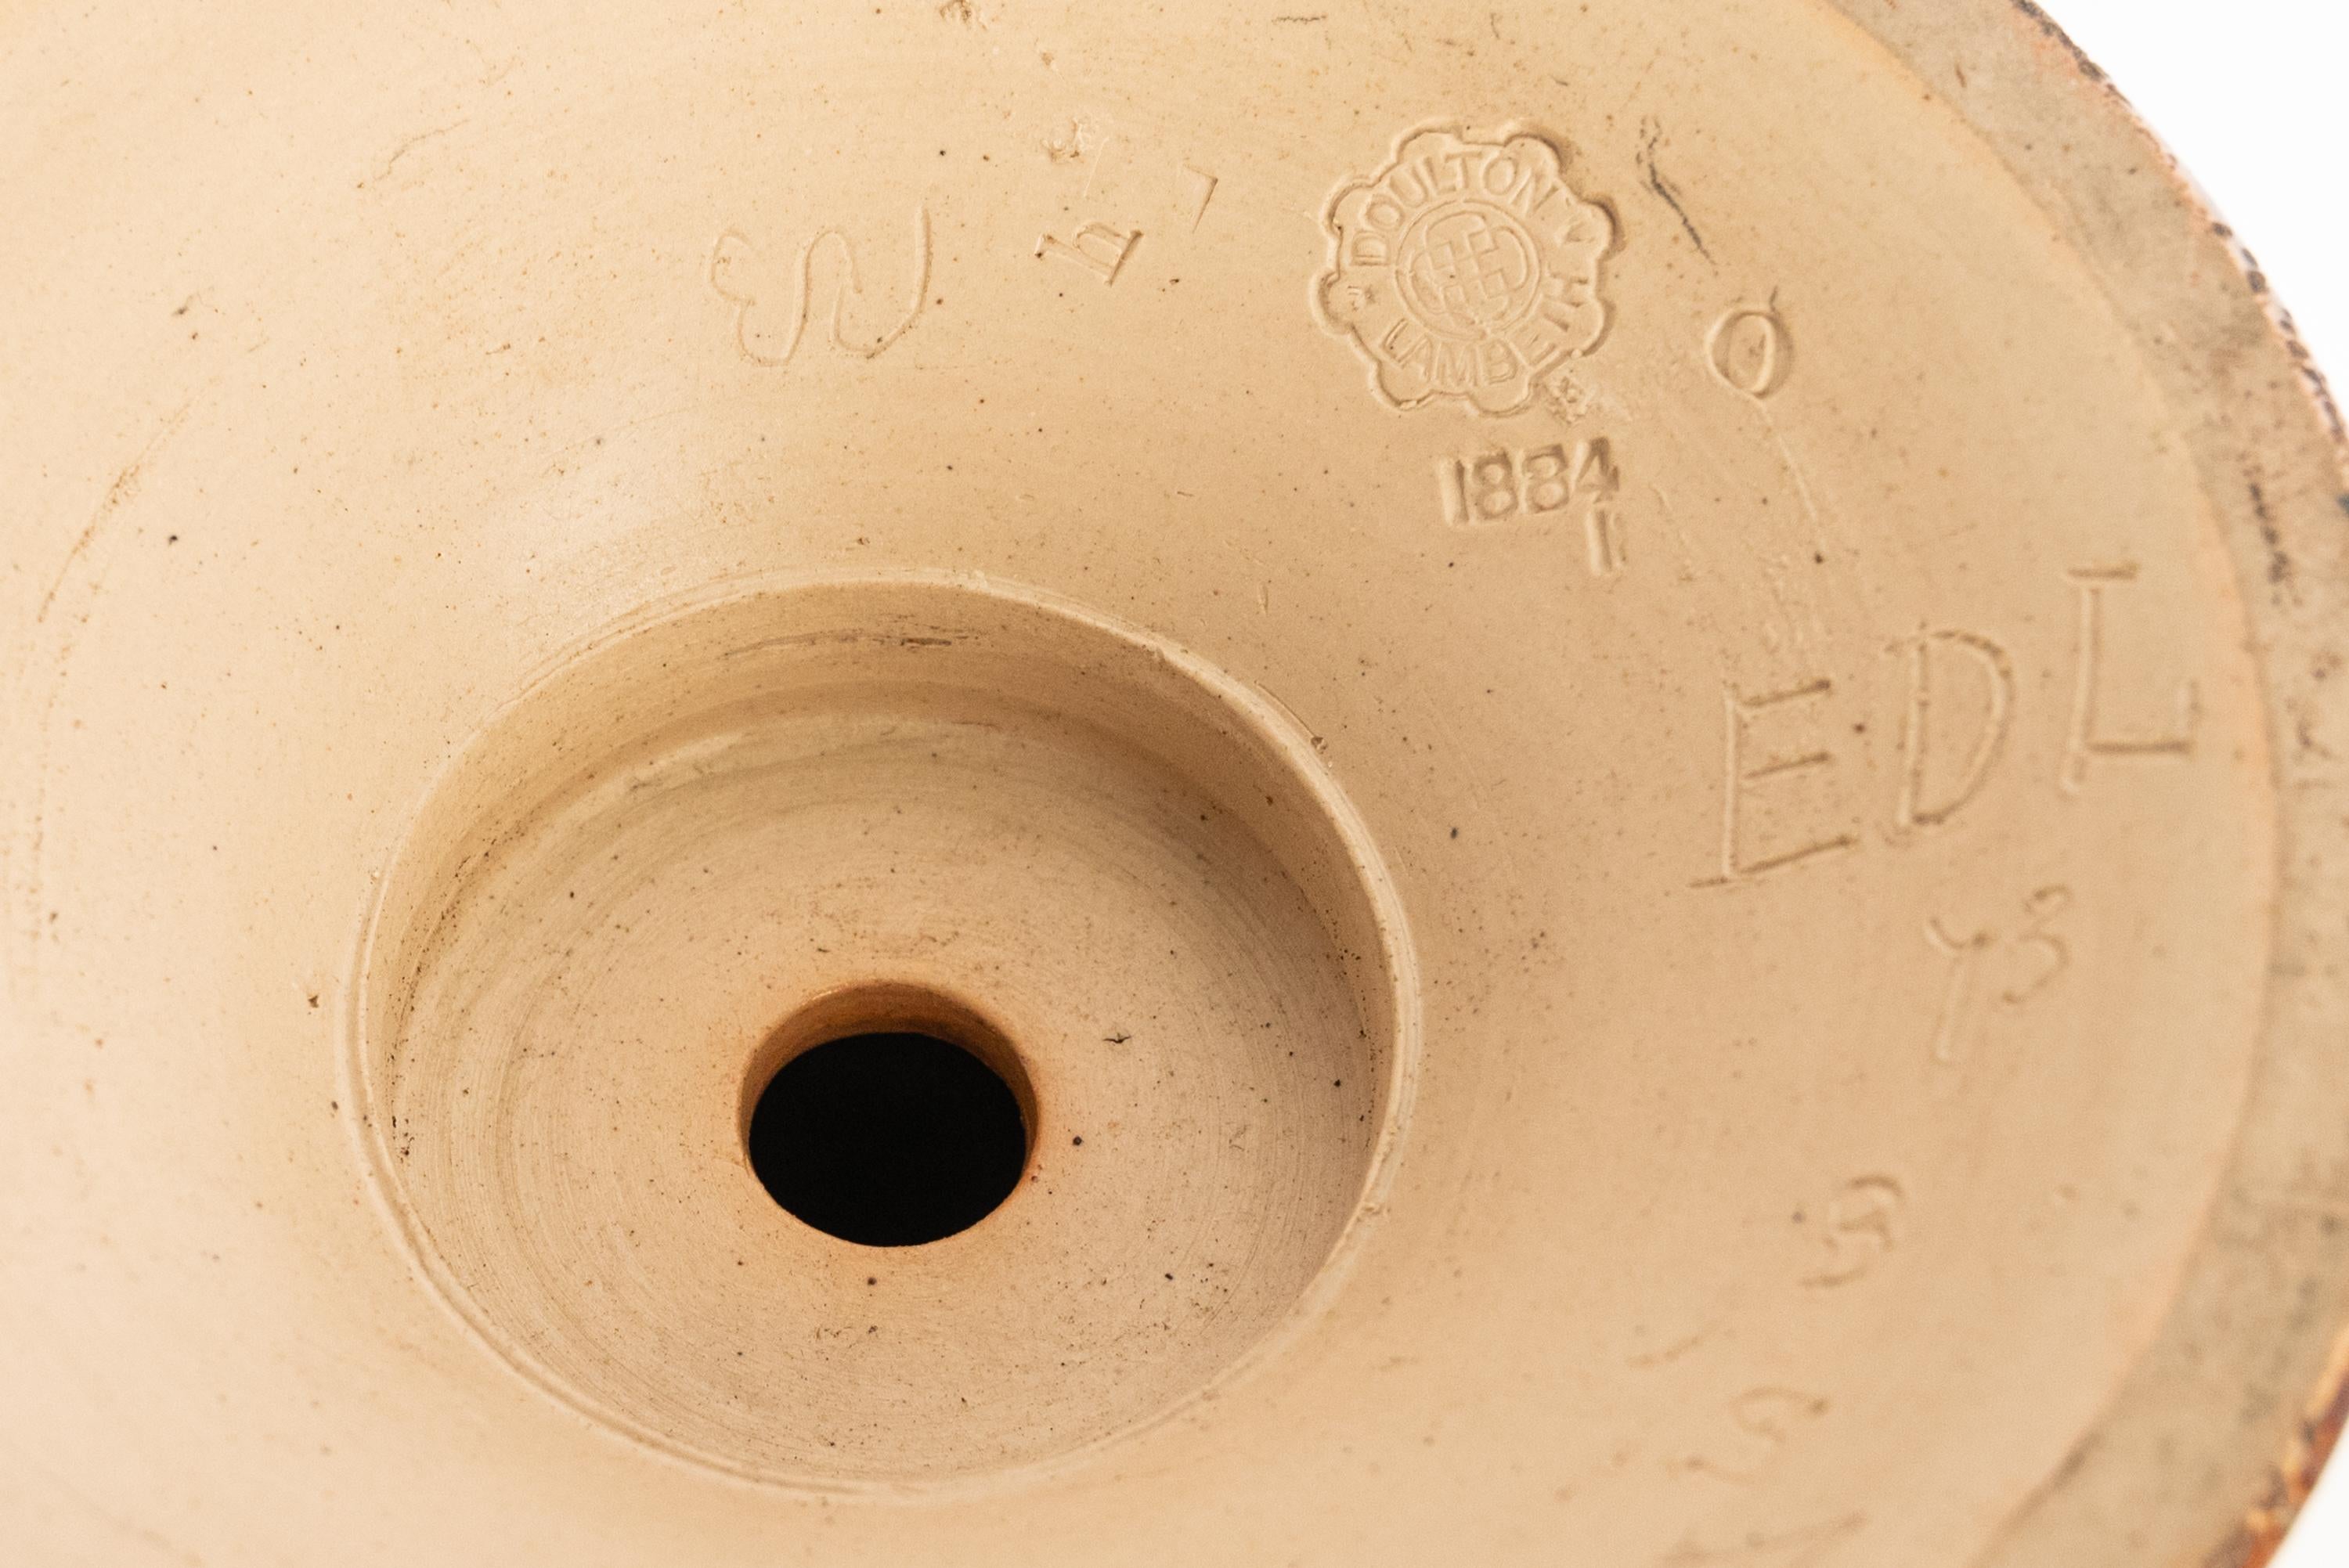 Antique Art Pottery Stoneware Dalton Lambeth Oil Lamp Signed Edith Lupton 1884 For Sale 10